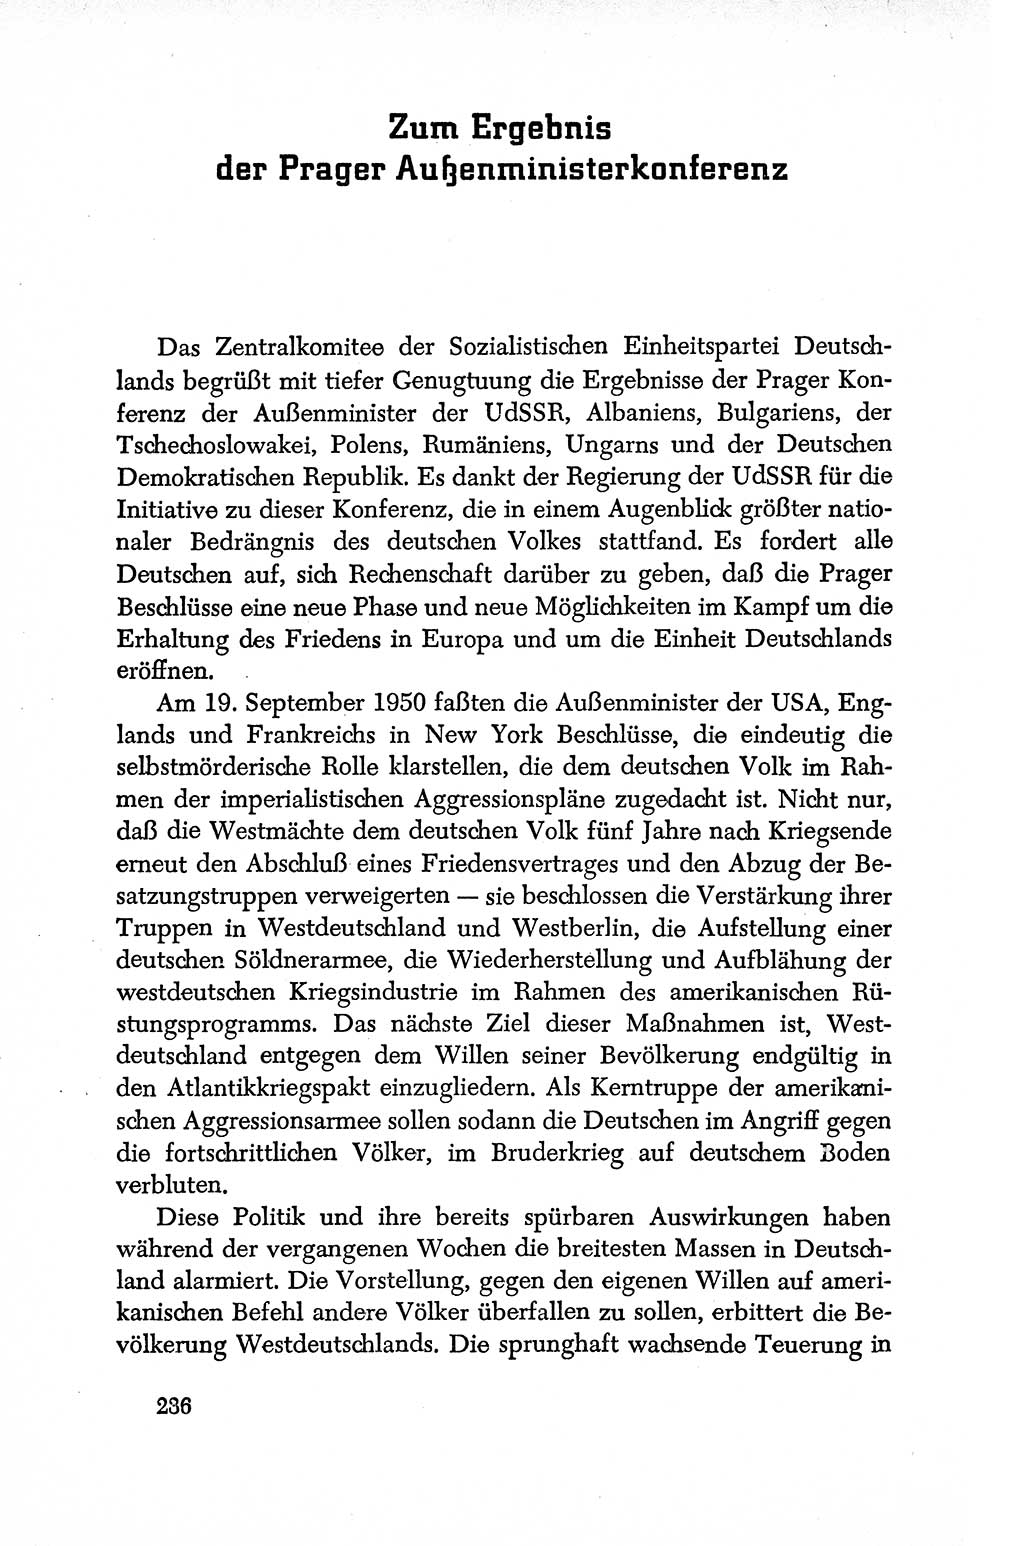 Dokumente der Sozialistischen Einheitspartei Deutschlands (SED) [Deutsche Demokratische Republik (DDR)] 1950-1952, Seite 236 (Dok. SED DDR 1950-1952, S. 236)